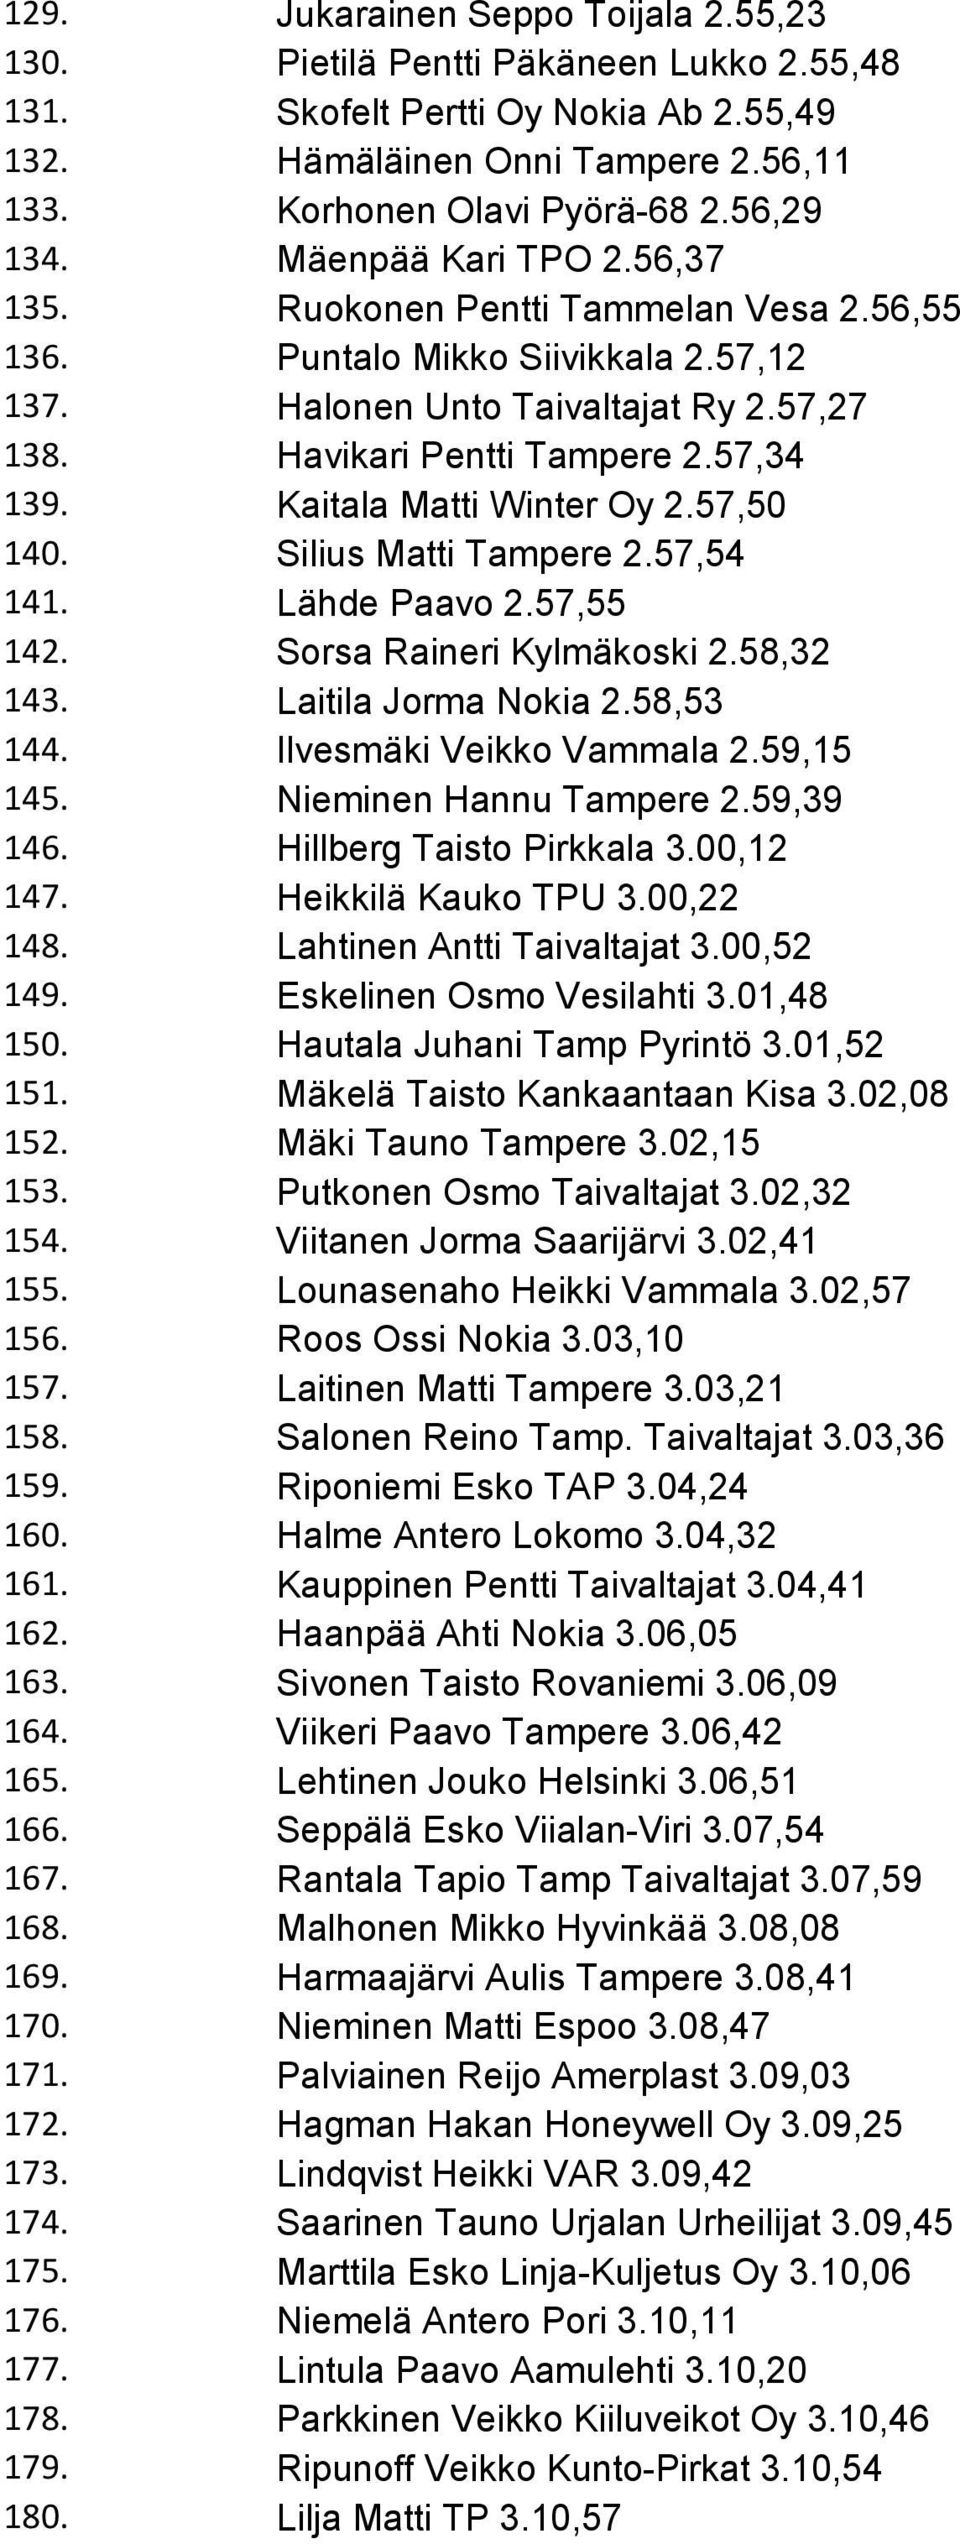 Kaitala Matti Winter Oy 2.57,50 140. Silius Matti Tampere 2.57,54 141. Lähde Paavo 2.57,55 142. Sorsa Raineri Kylmäkoski 2.58,32 143. Laitila Jorma Nokia 2.58,53 144. Ilvesmäki Veikko Vammala 2.